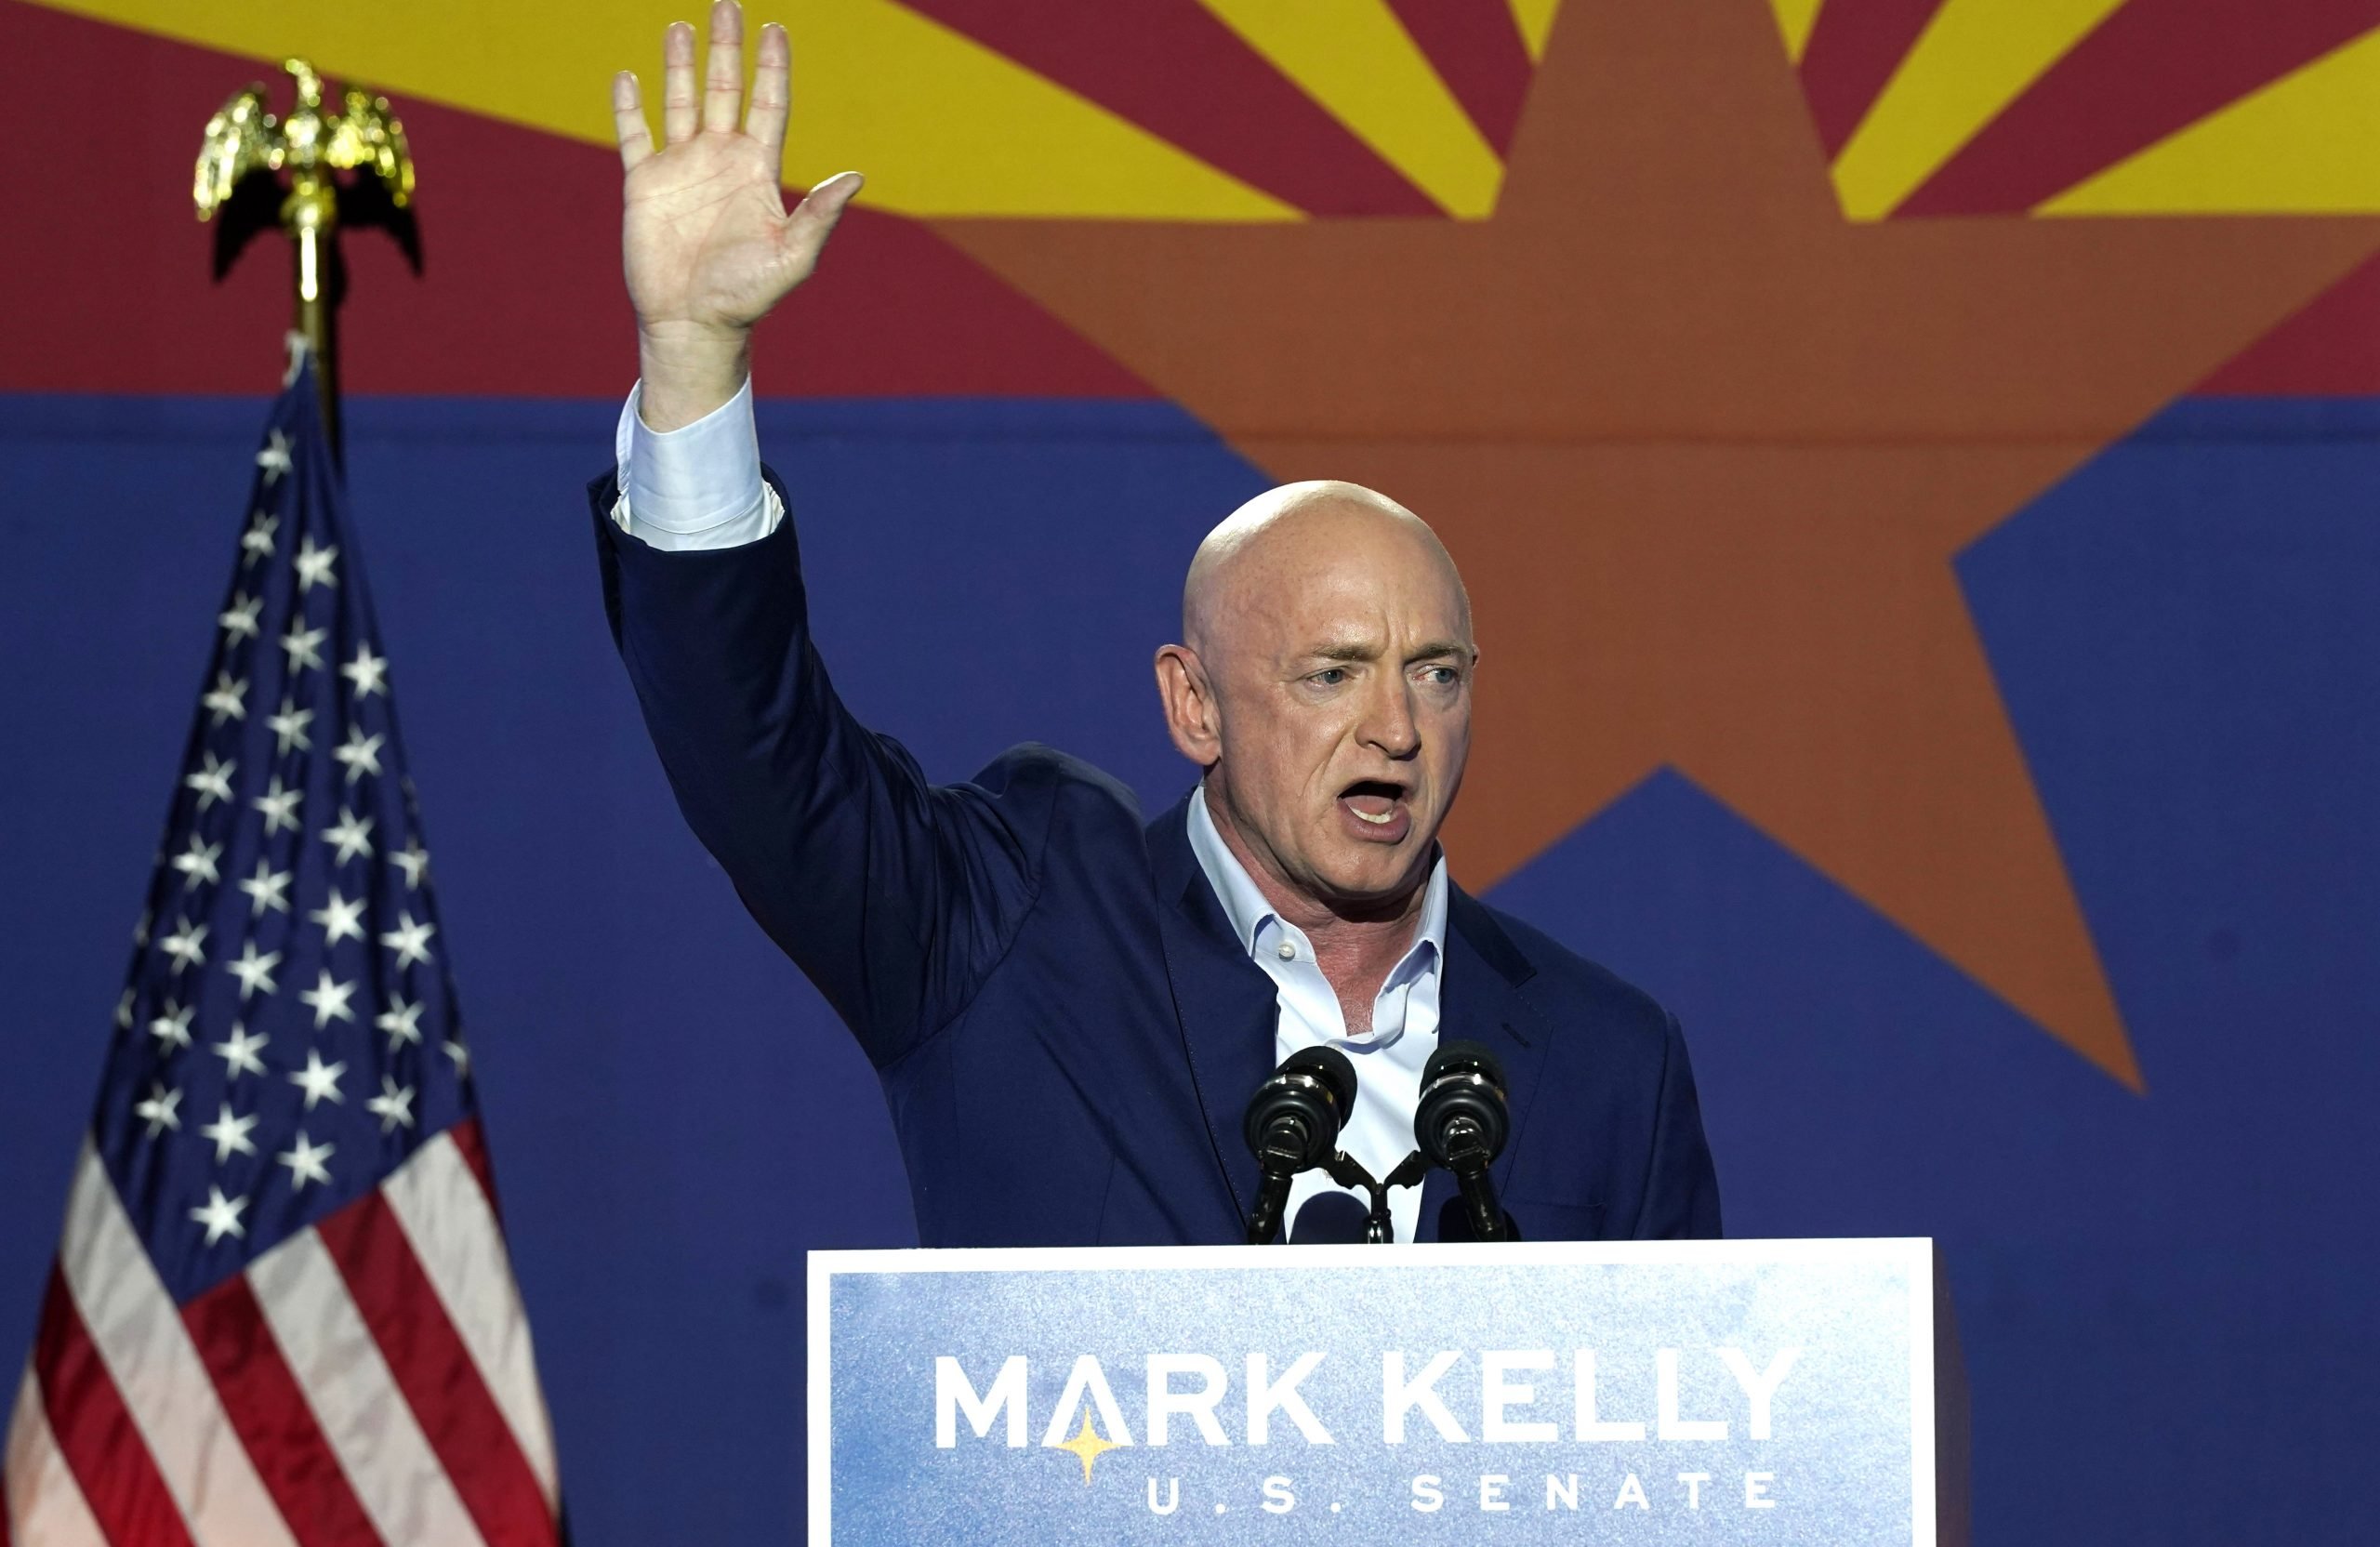 Democrat Mark Kelly flips Republican Senate seat in Arizona